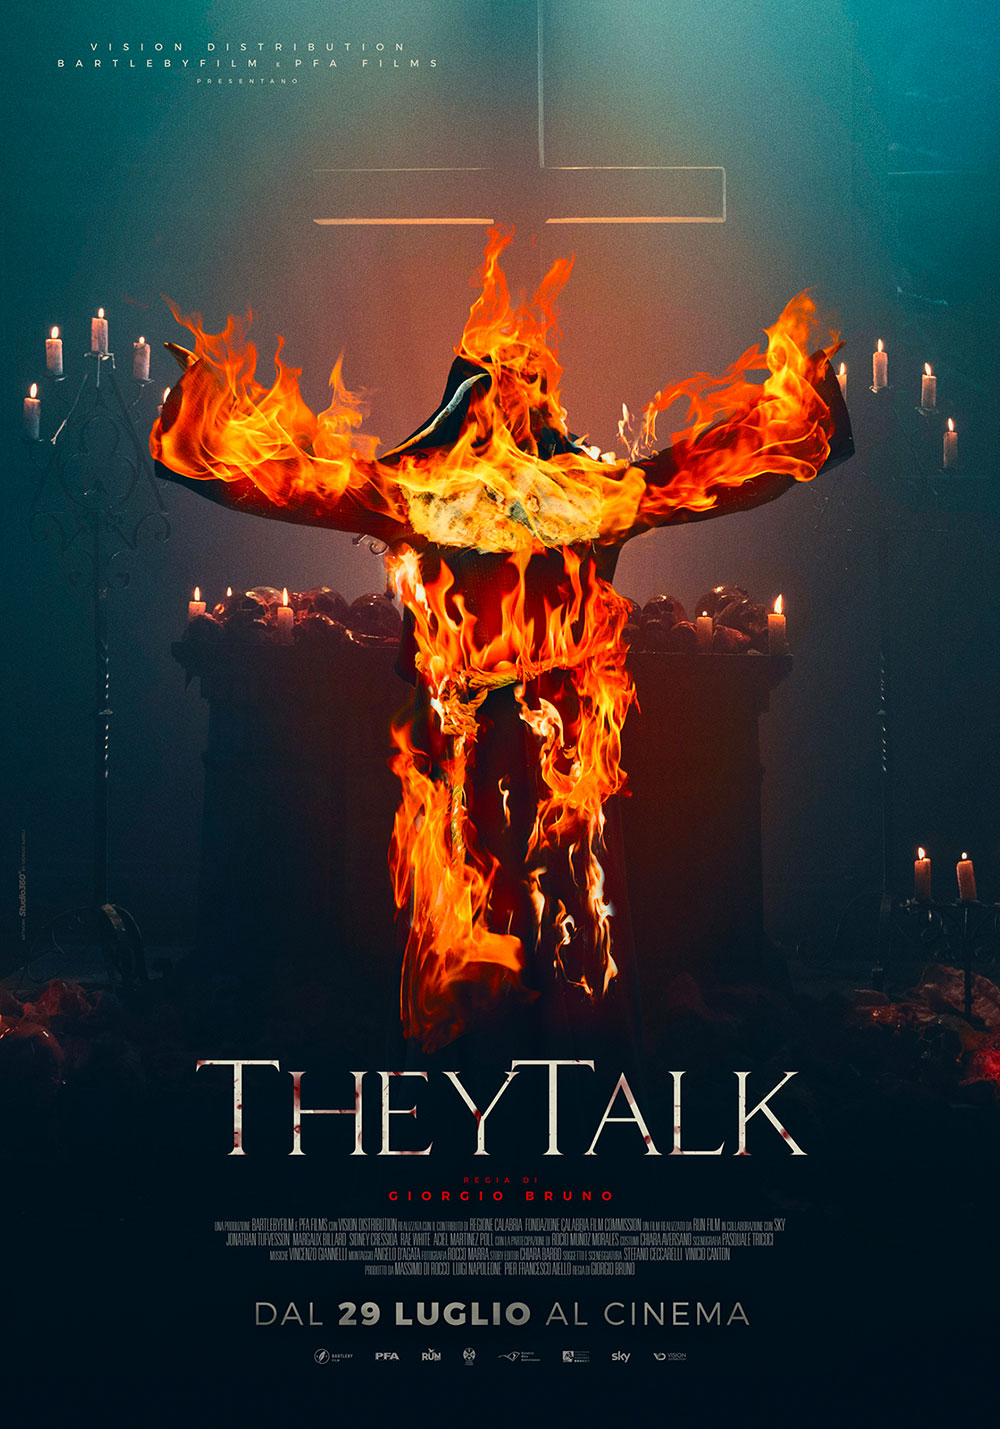  Dall'articolo: They Talk, il poster ufficiale del film.